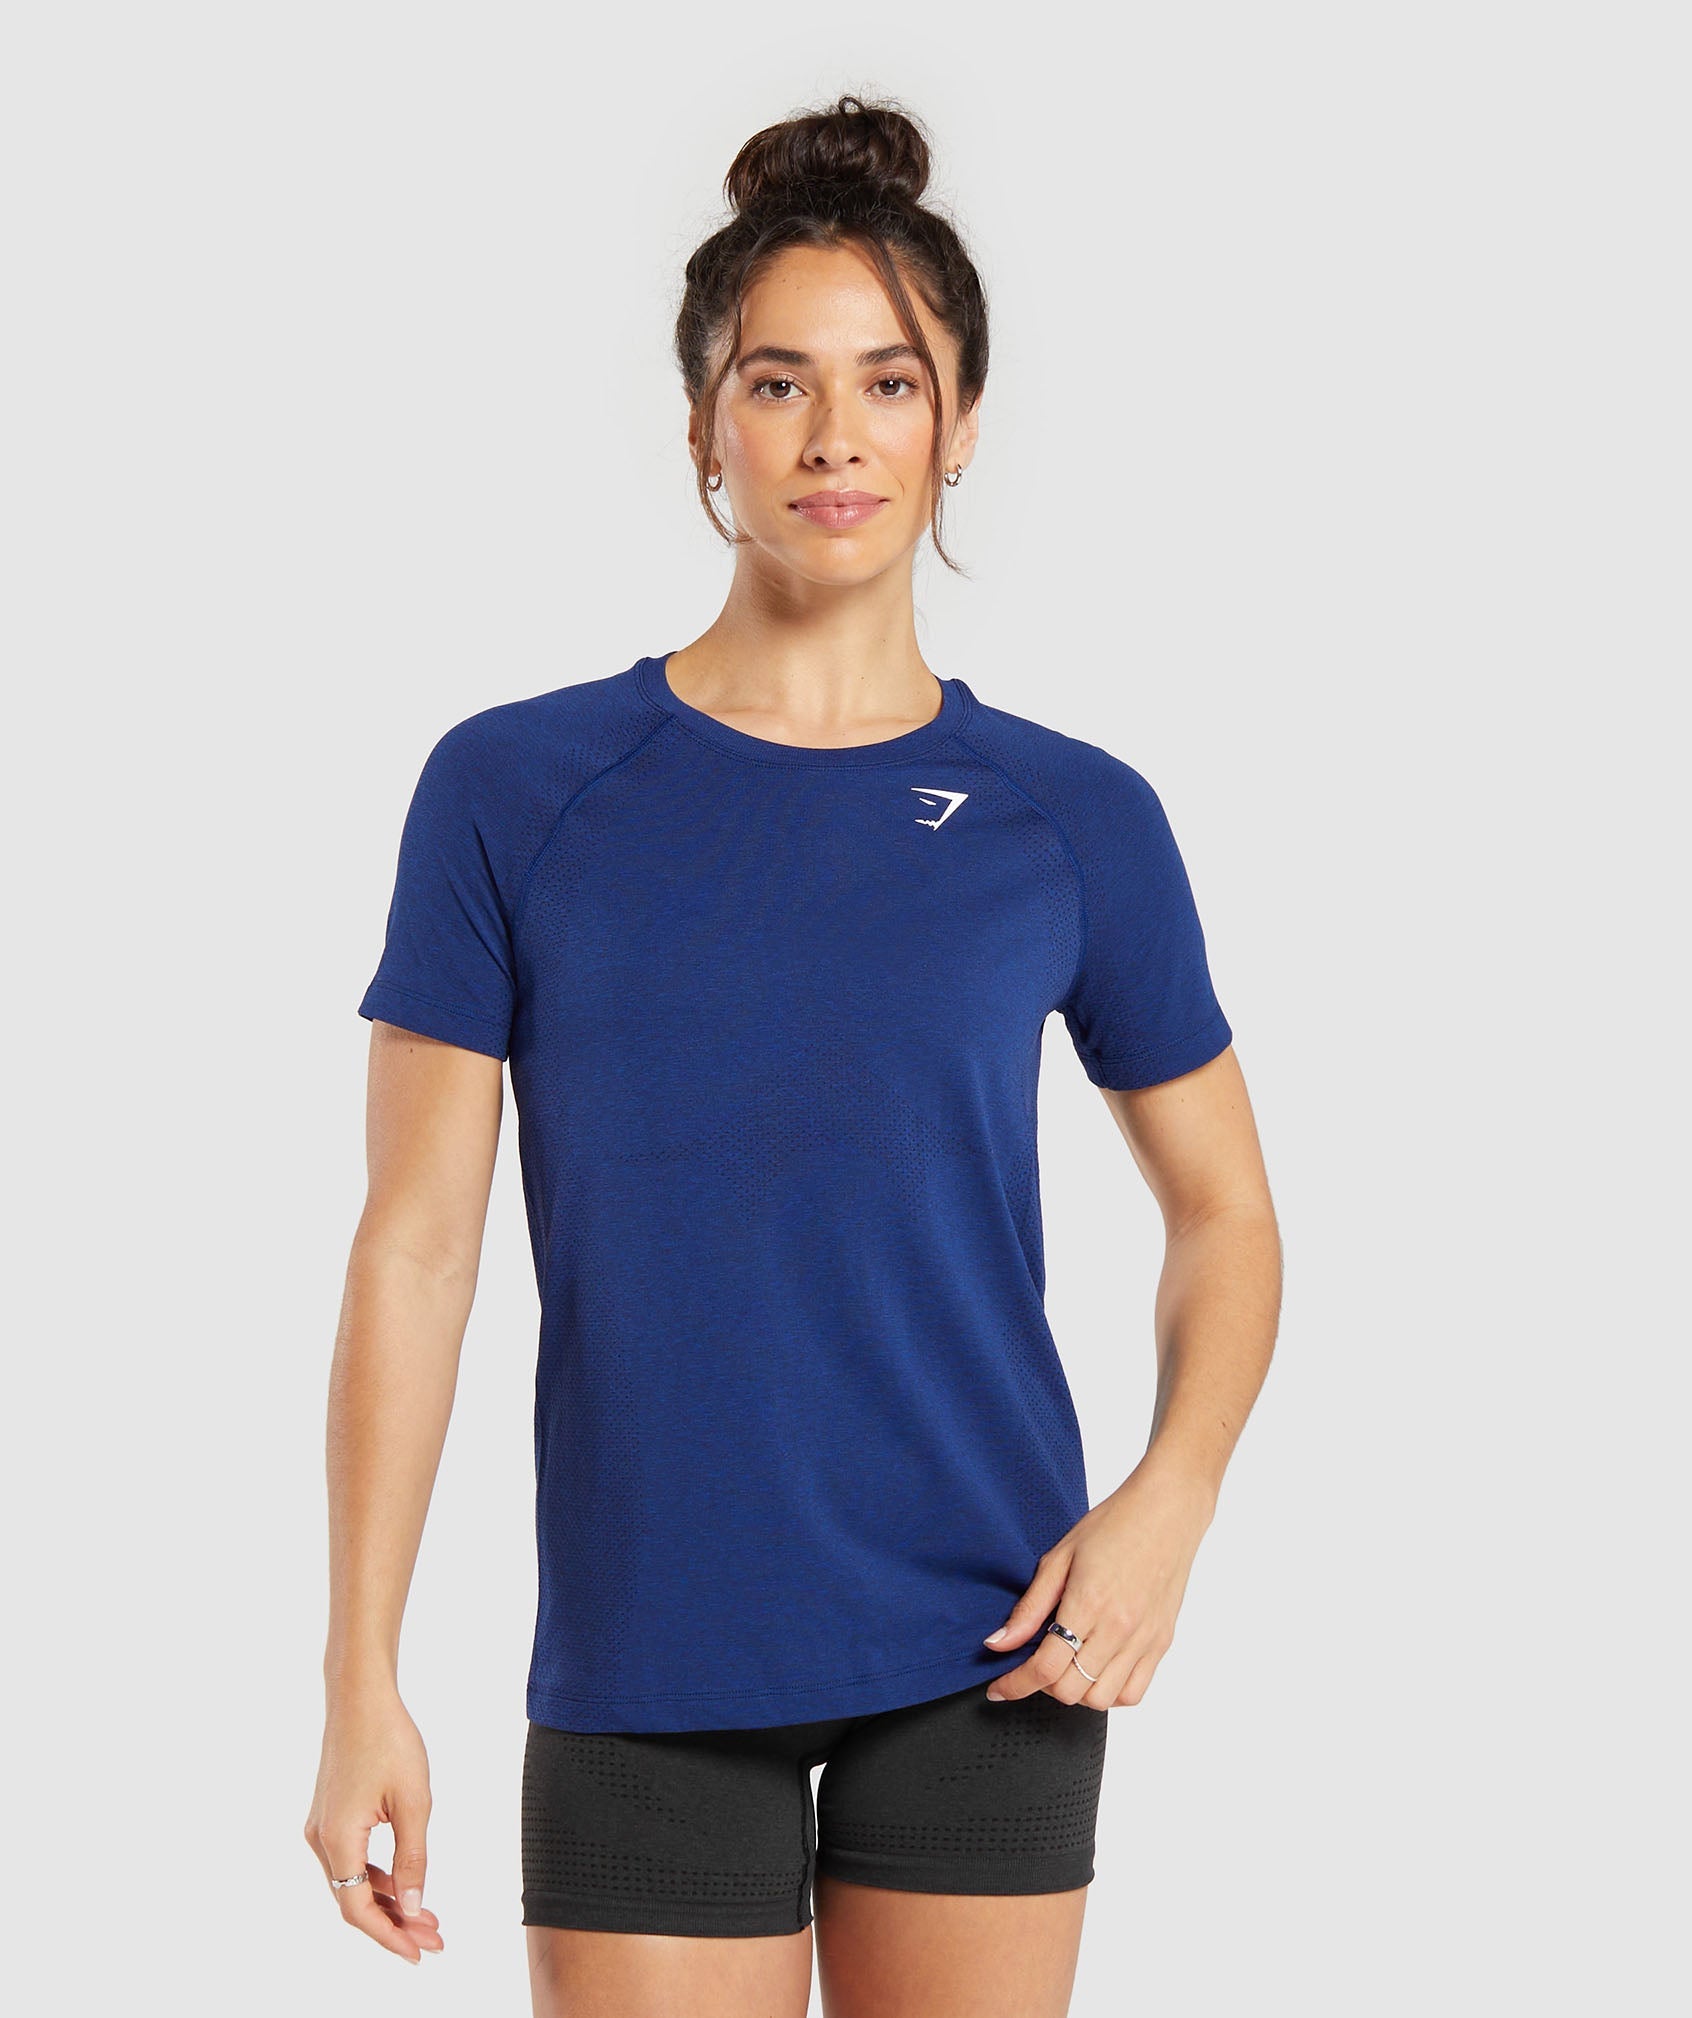 Vital Seamless  2.0 Light T Shirt in Stellar Blue Marl